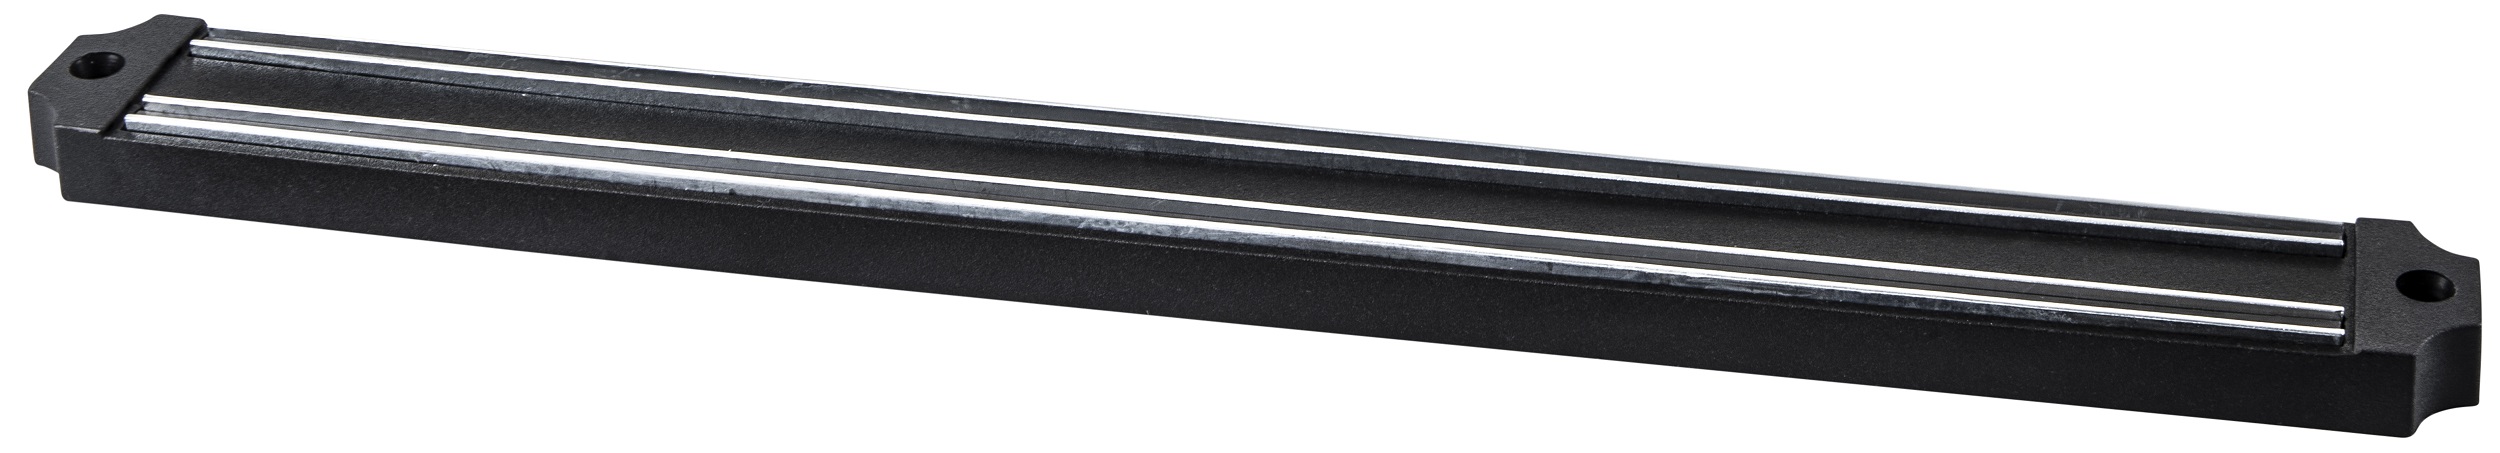 Магнитная платнка для ножей RINGEL RG-11009-1 Main в ассортименте